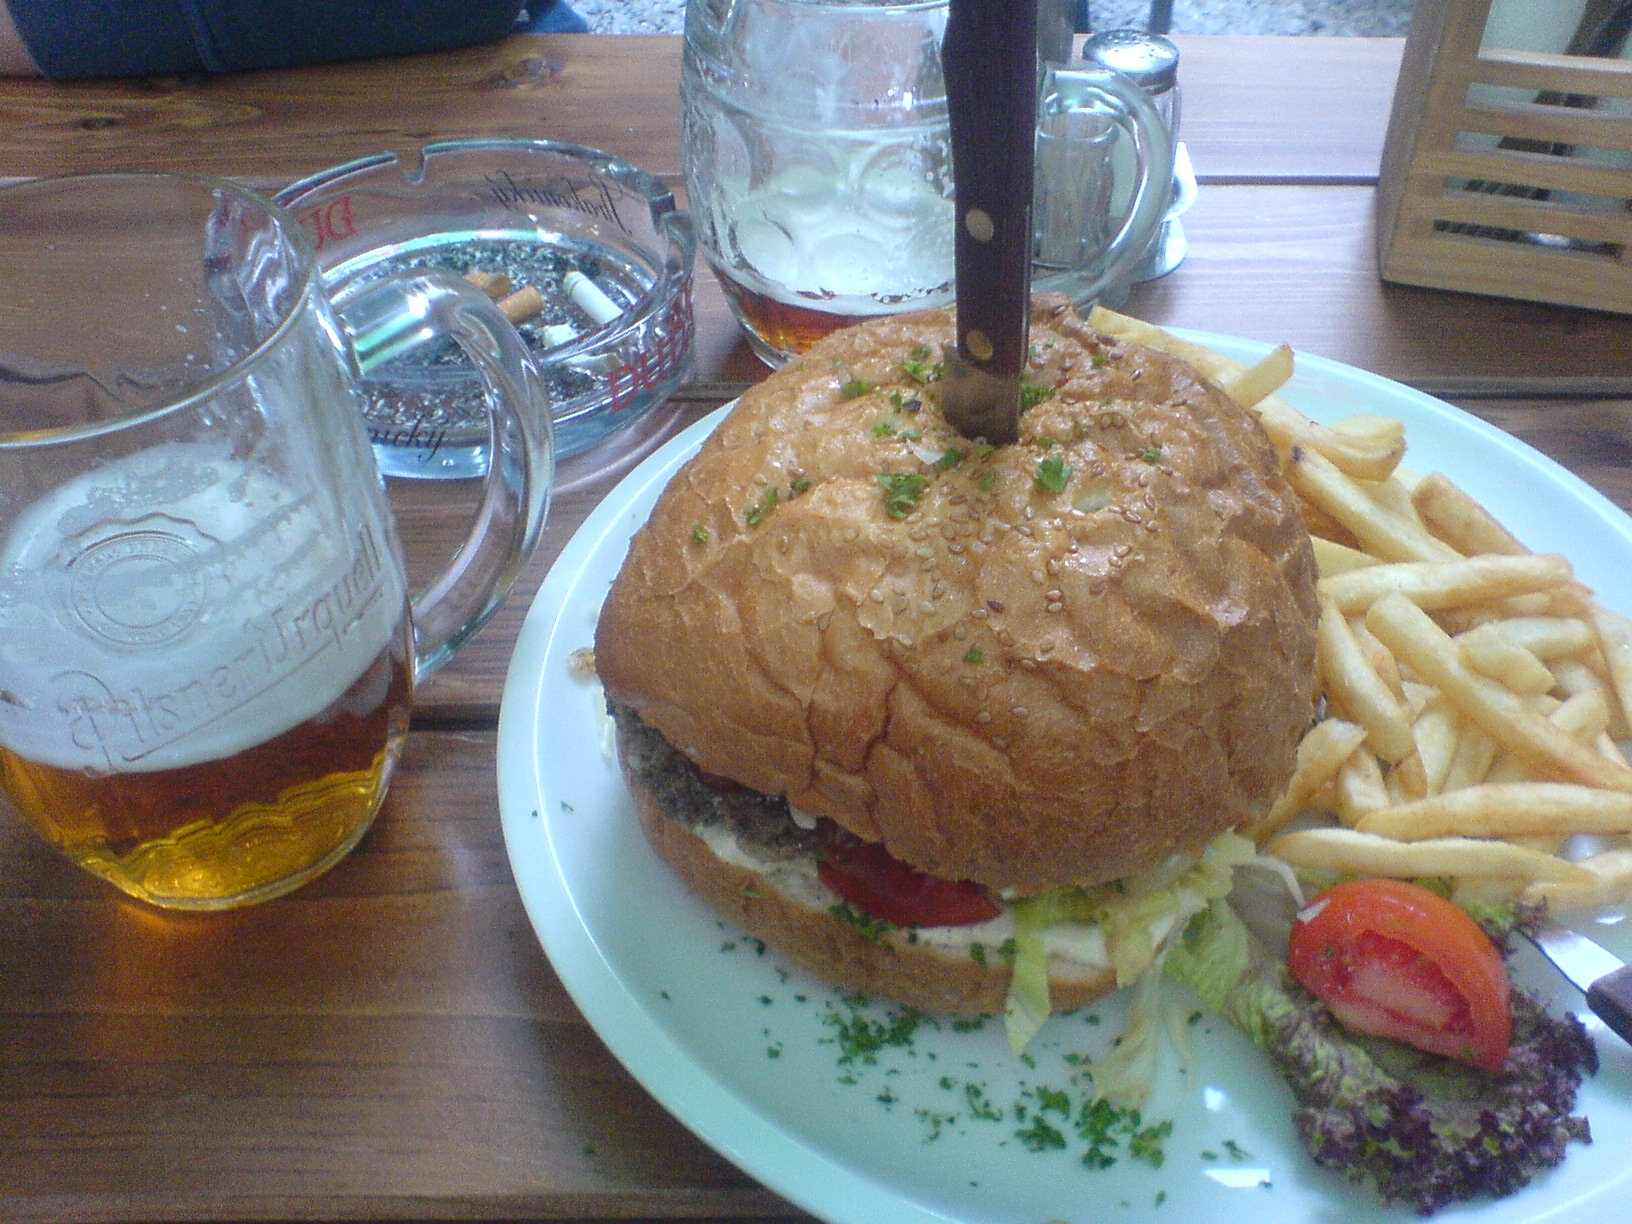 Obrázek miniburger 